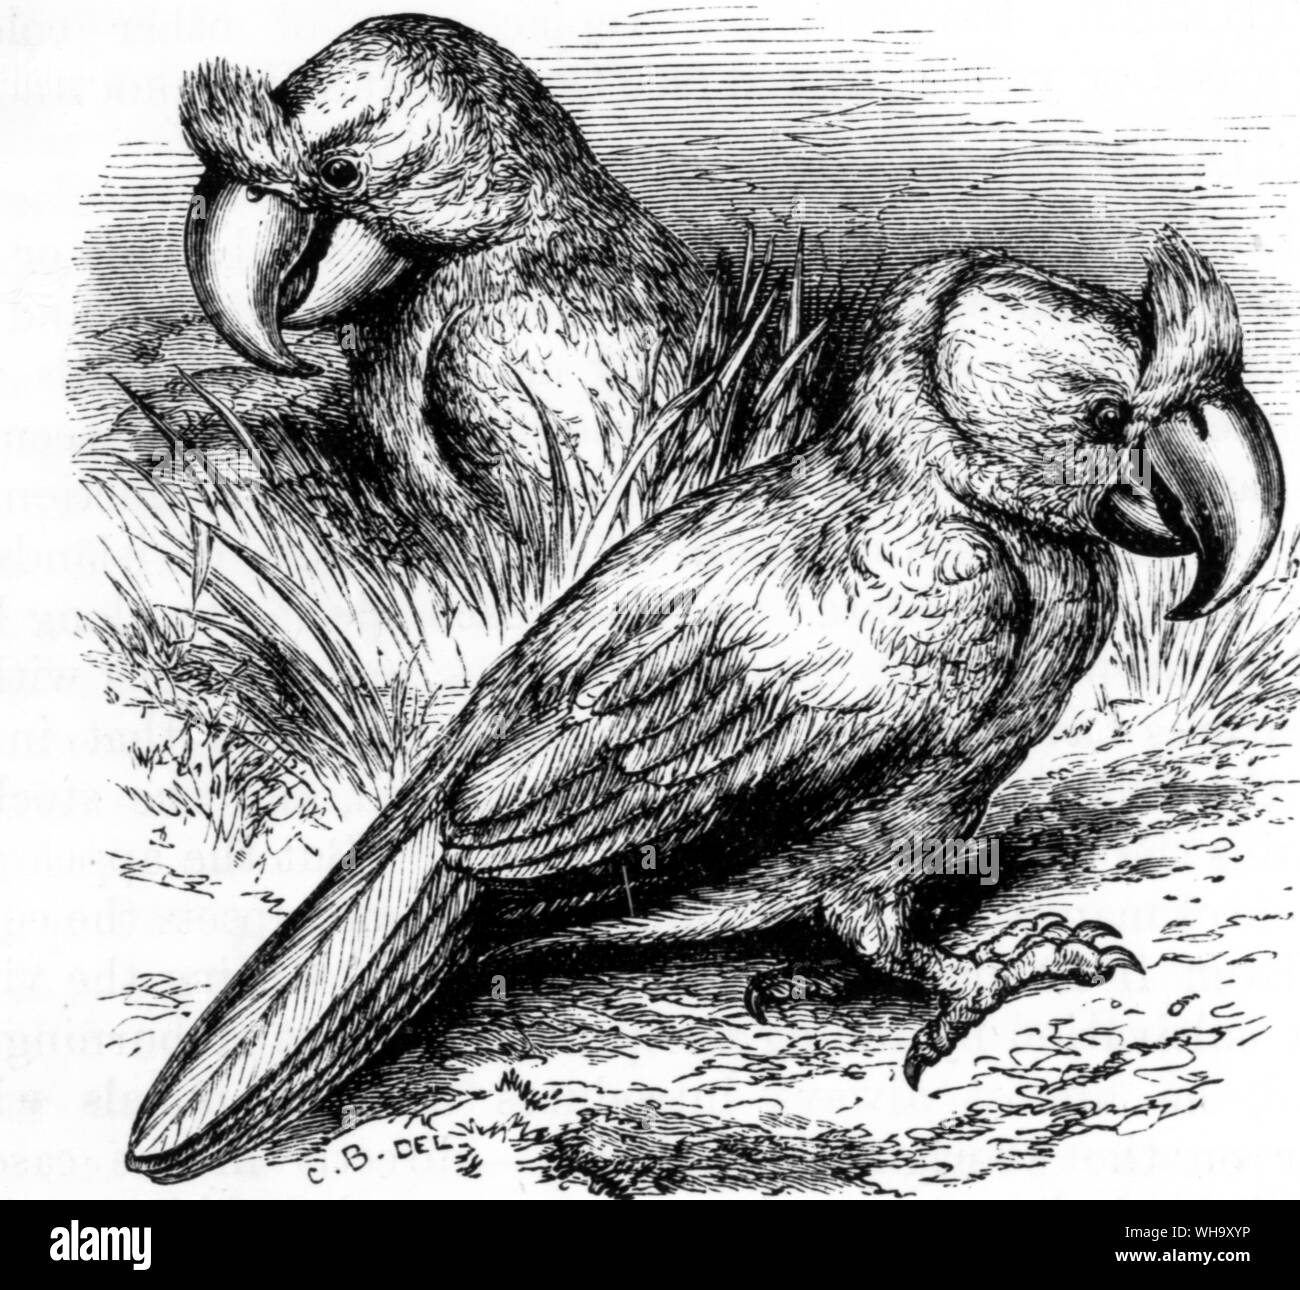 L'adaptation de l'élaboration d'un large-billed Parrot dans le manuscrit d'Harmanszoon Wolphart's journal (c.1601) dans le Bibliotheek der Rijksuniversiteit, Utrecht. Longueur de 70cm d'oiseaux (28) Banque D'Images